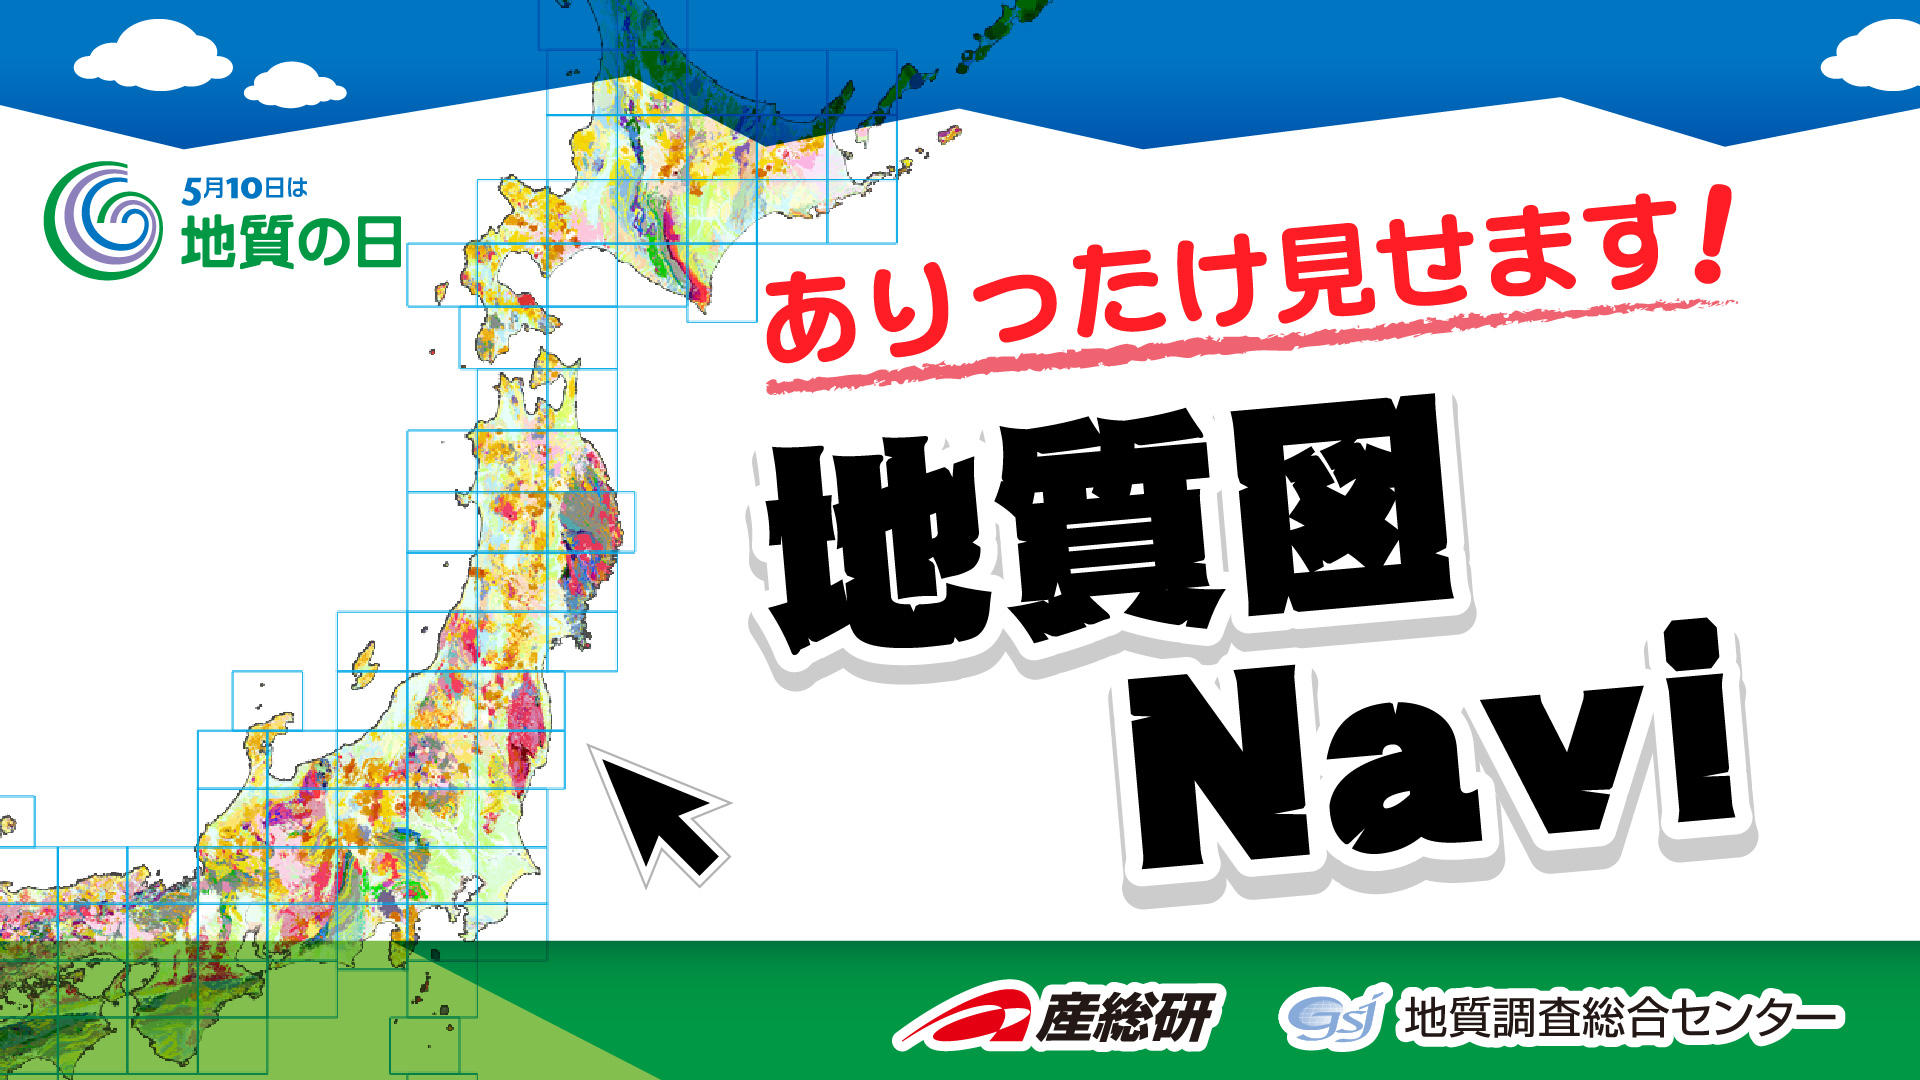 「ありったけ見せます、地質図Navi」